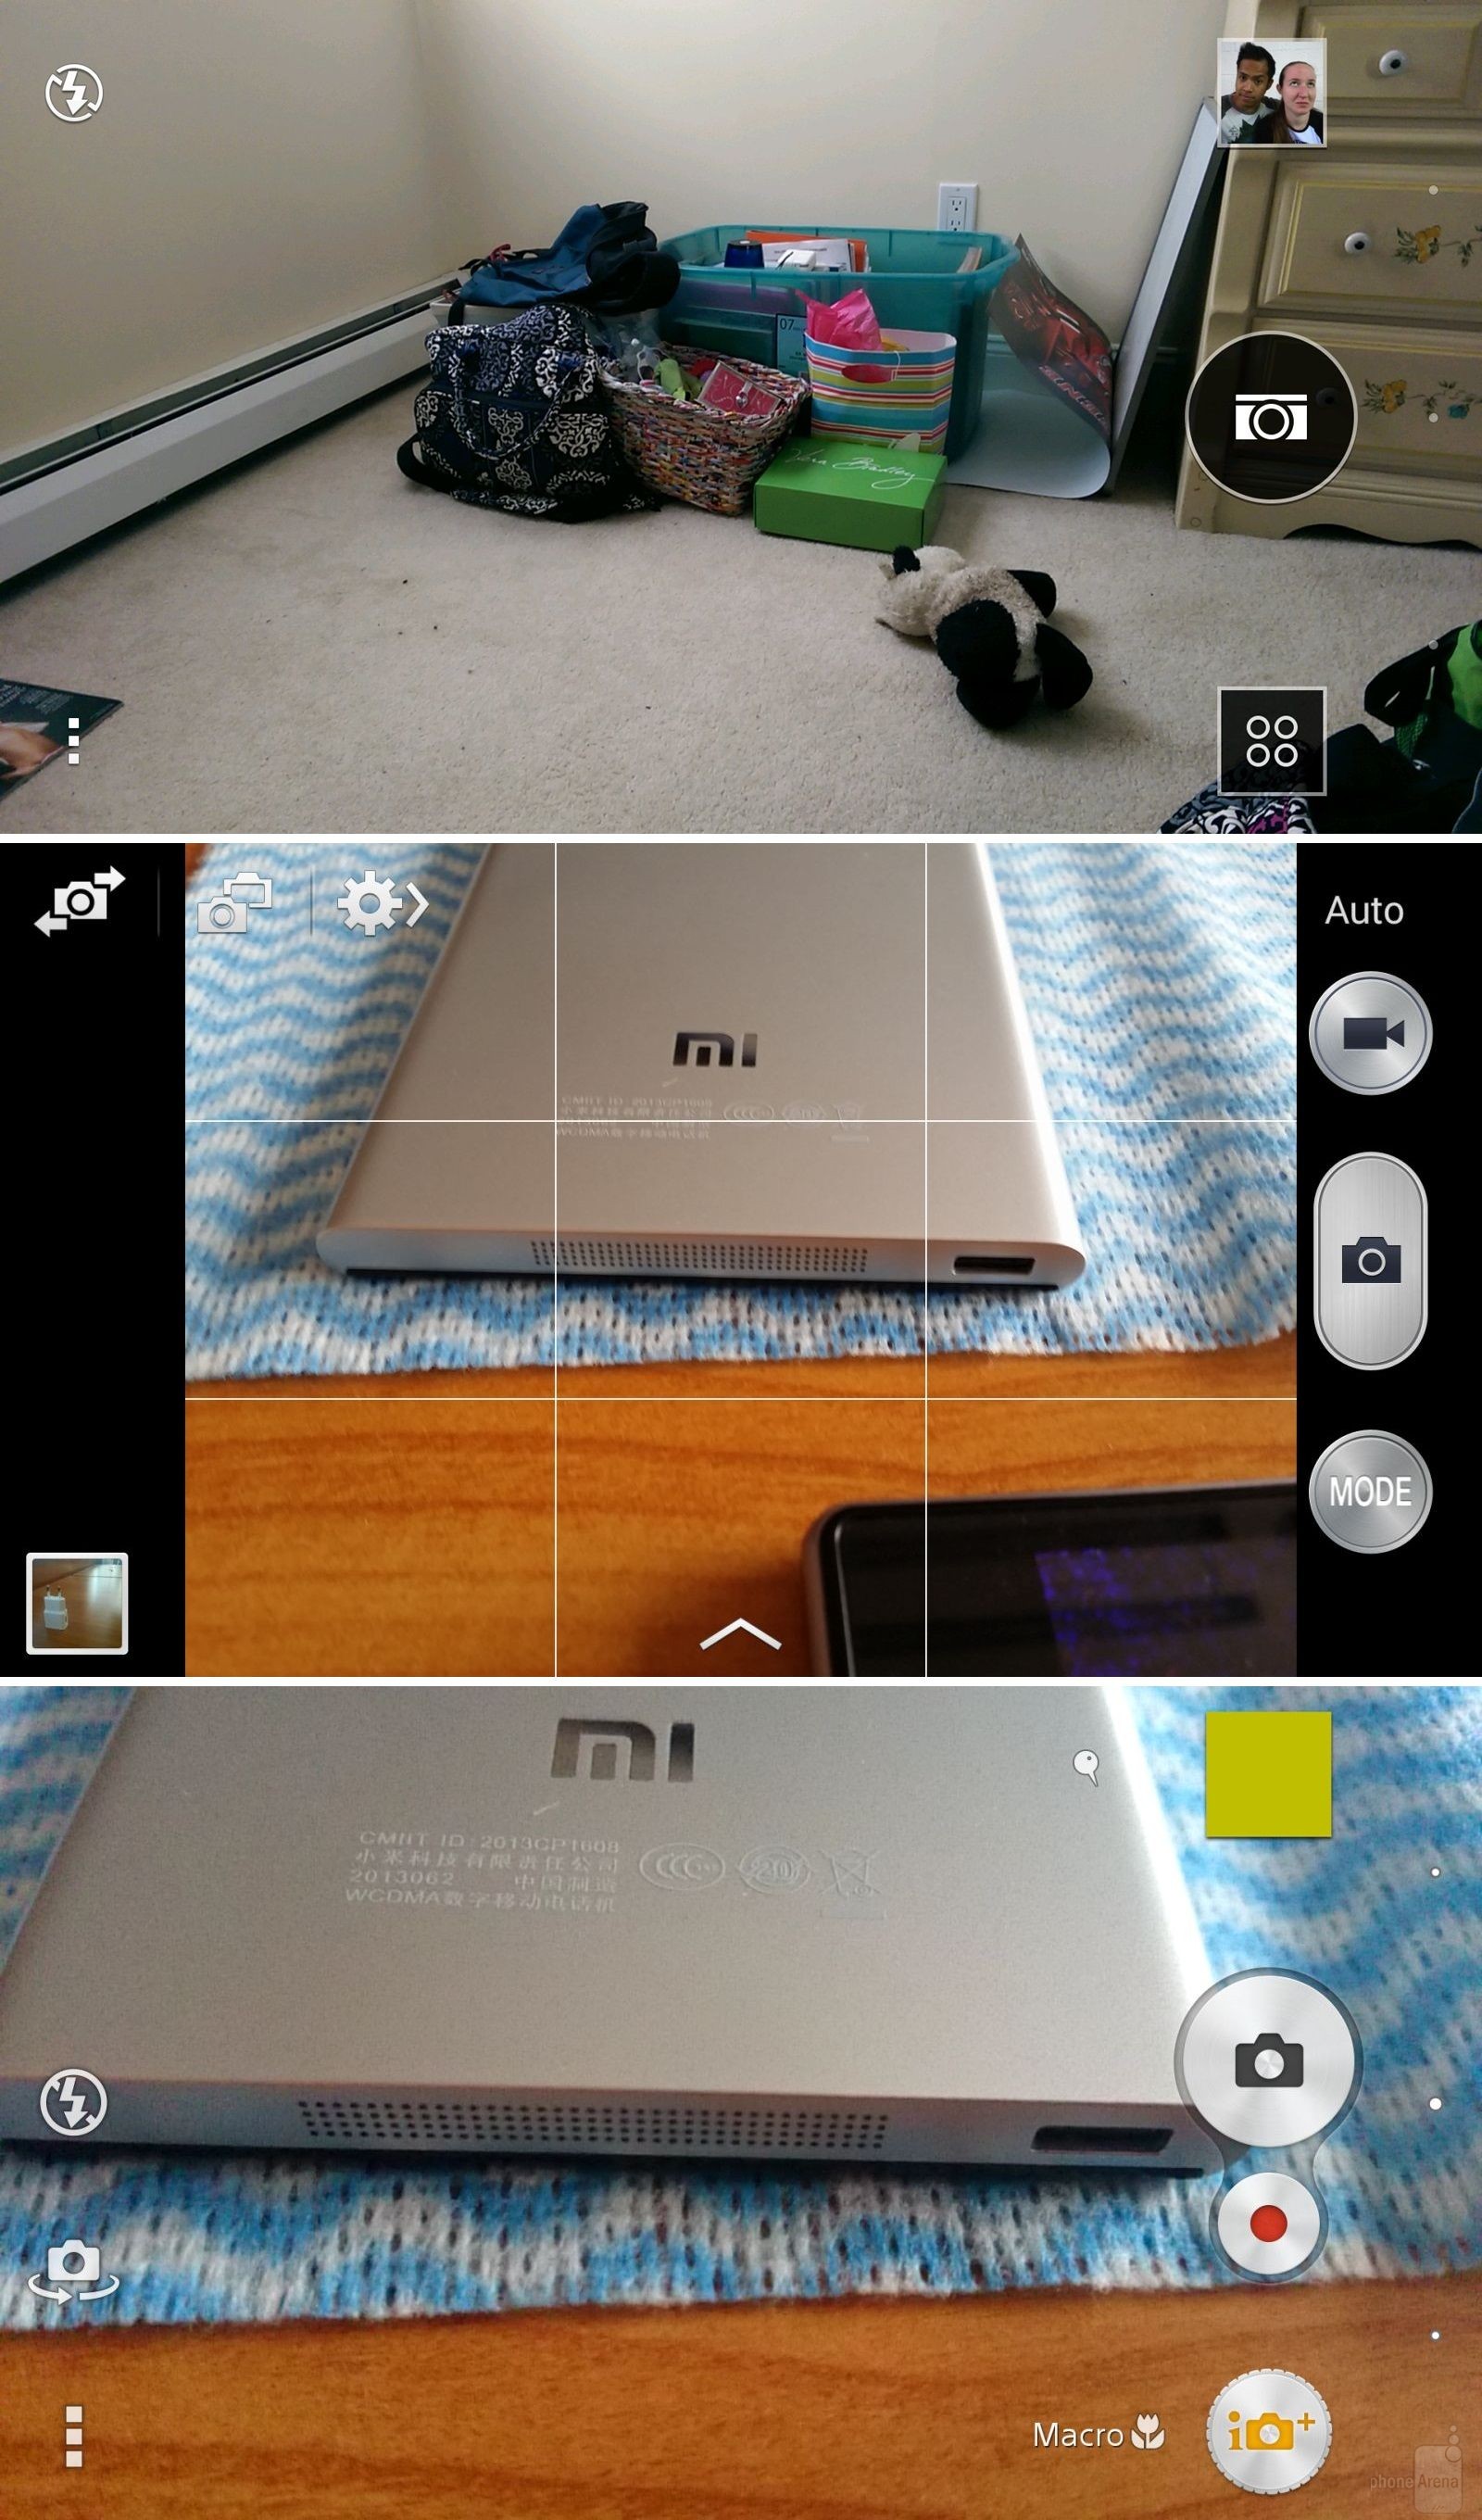 Giao diện camera trừ trên xuống dưới là Sense 6.0, TouchWiz và Xperia UI.